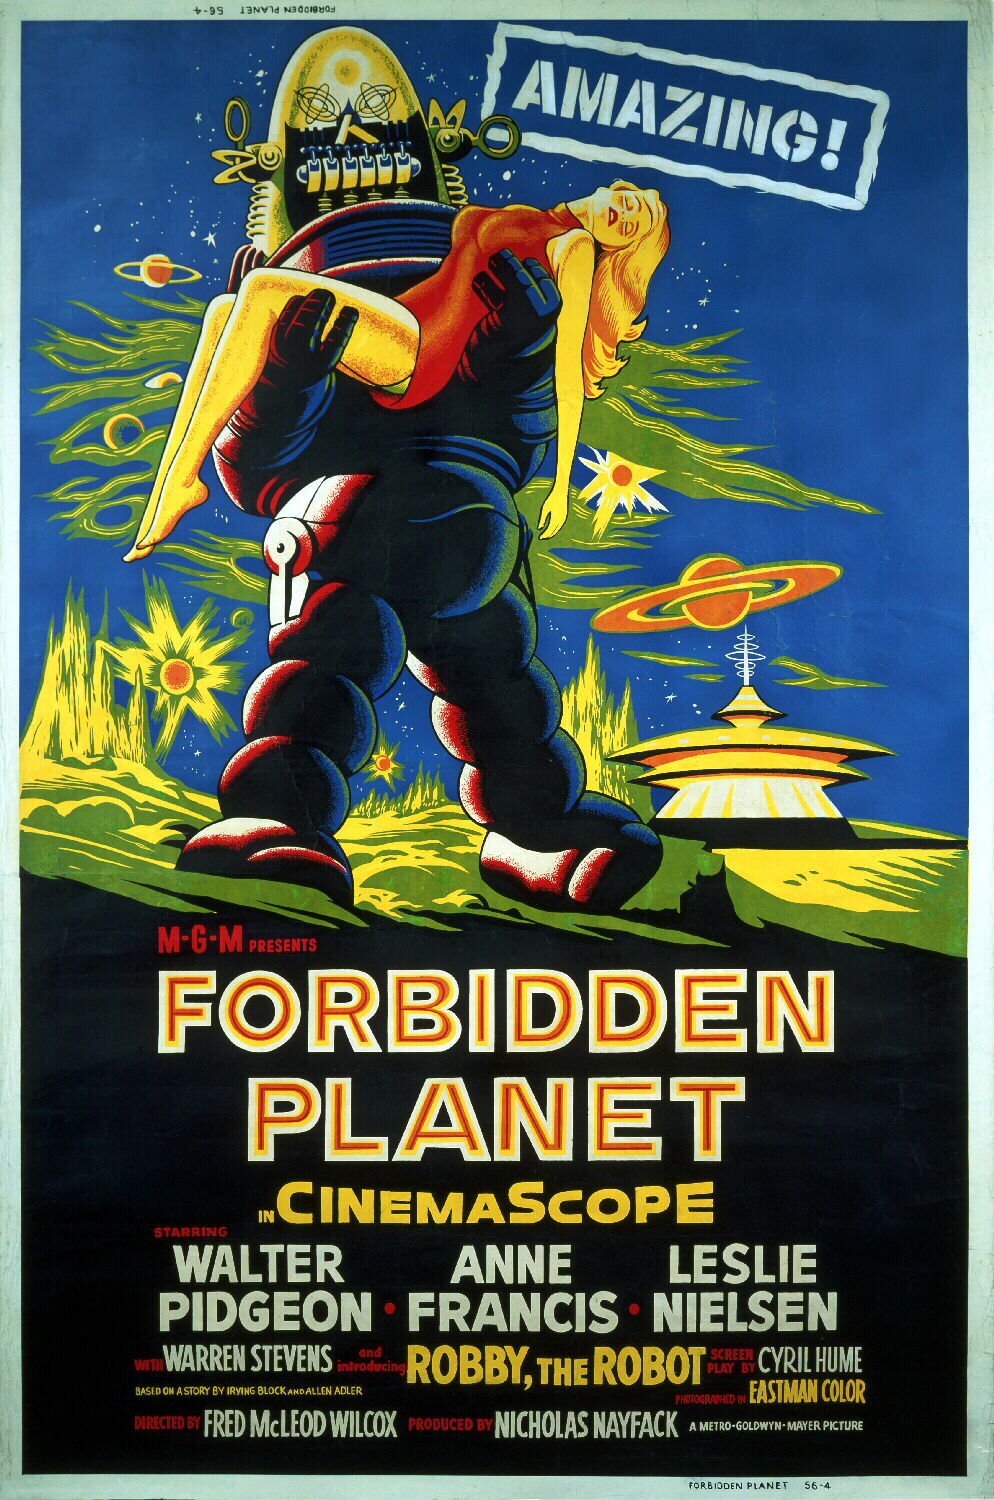 Forbidden Planet - still